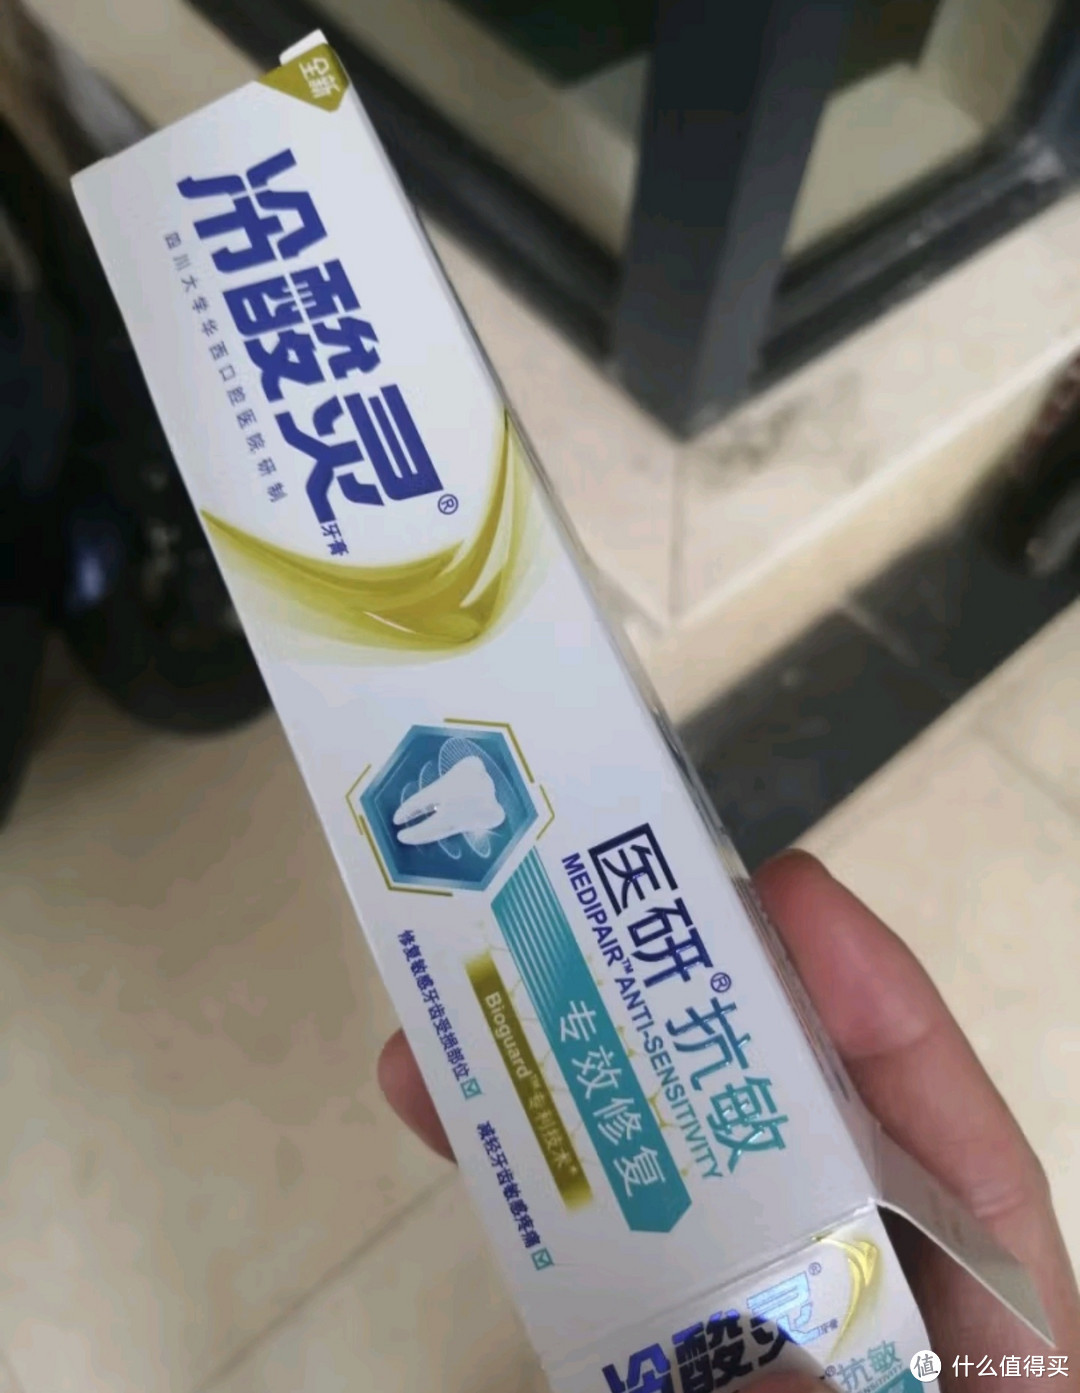 618种草大会之冷酸灵抗敏感专效修护牙膏!